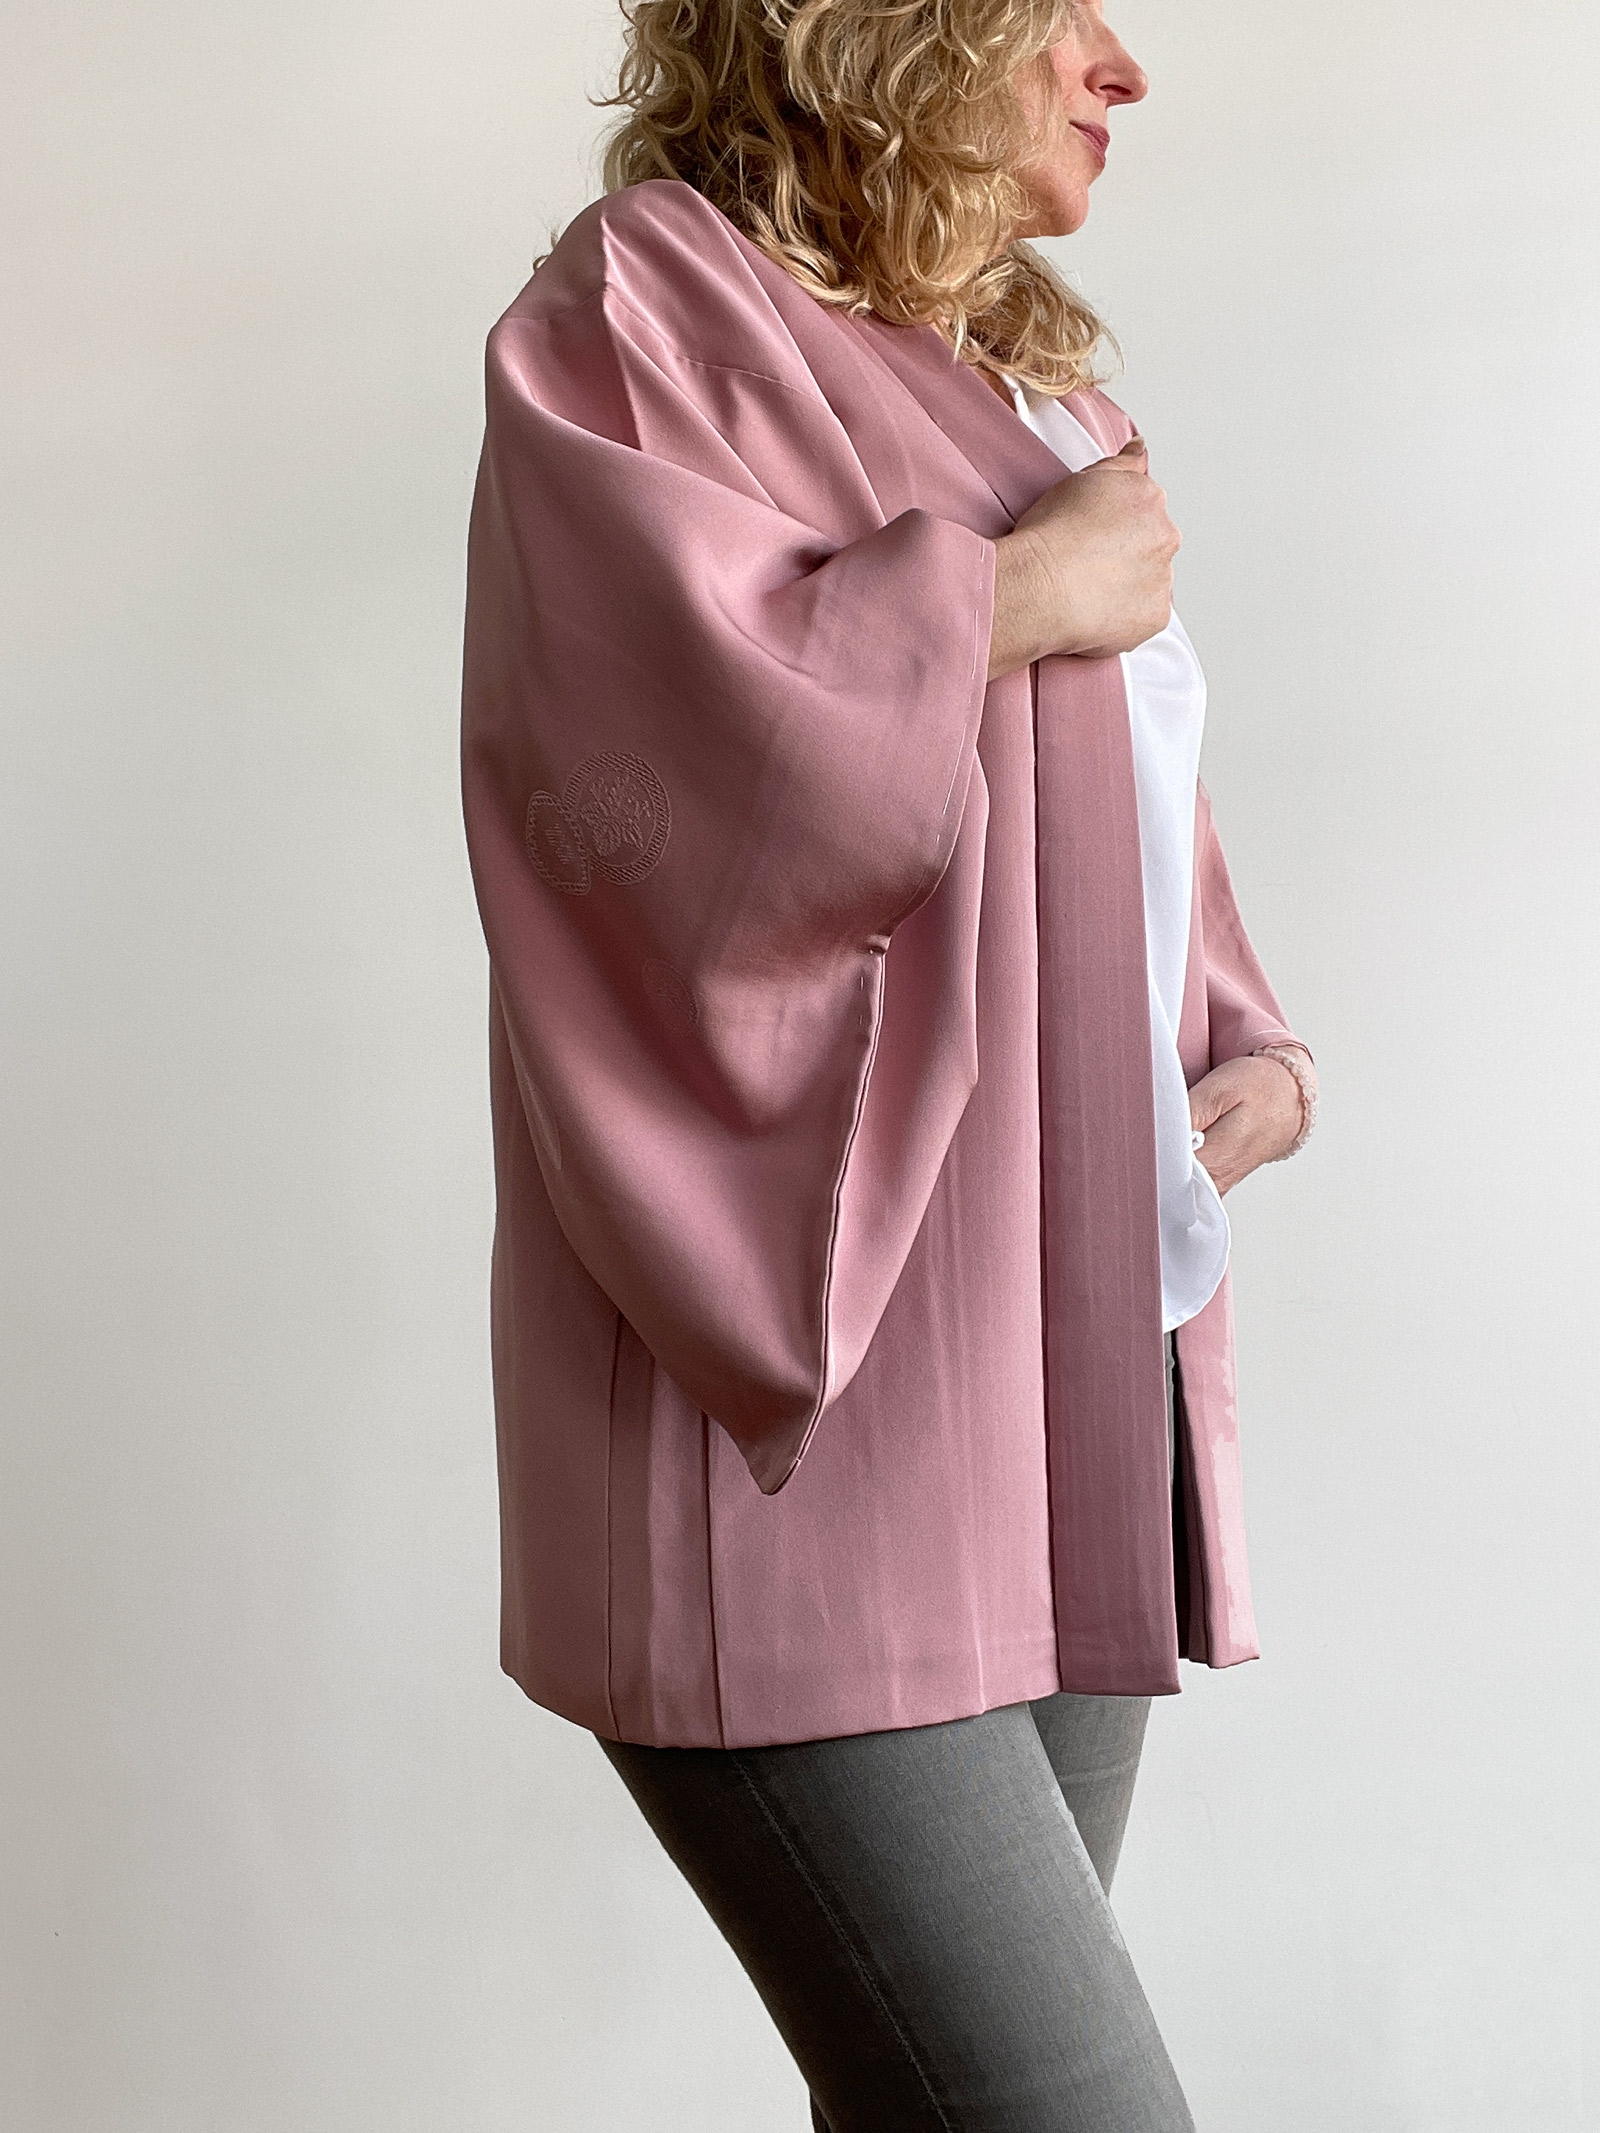 Miya – stunning silk Haori in old pink